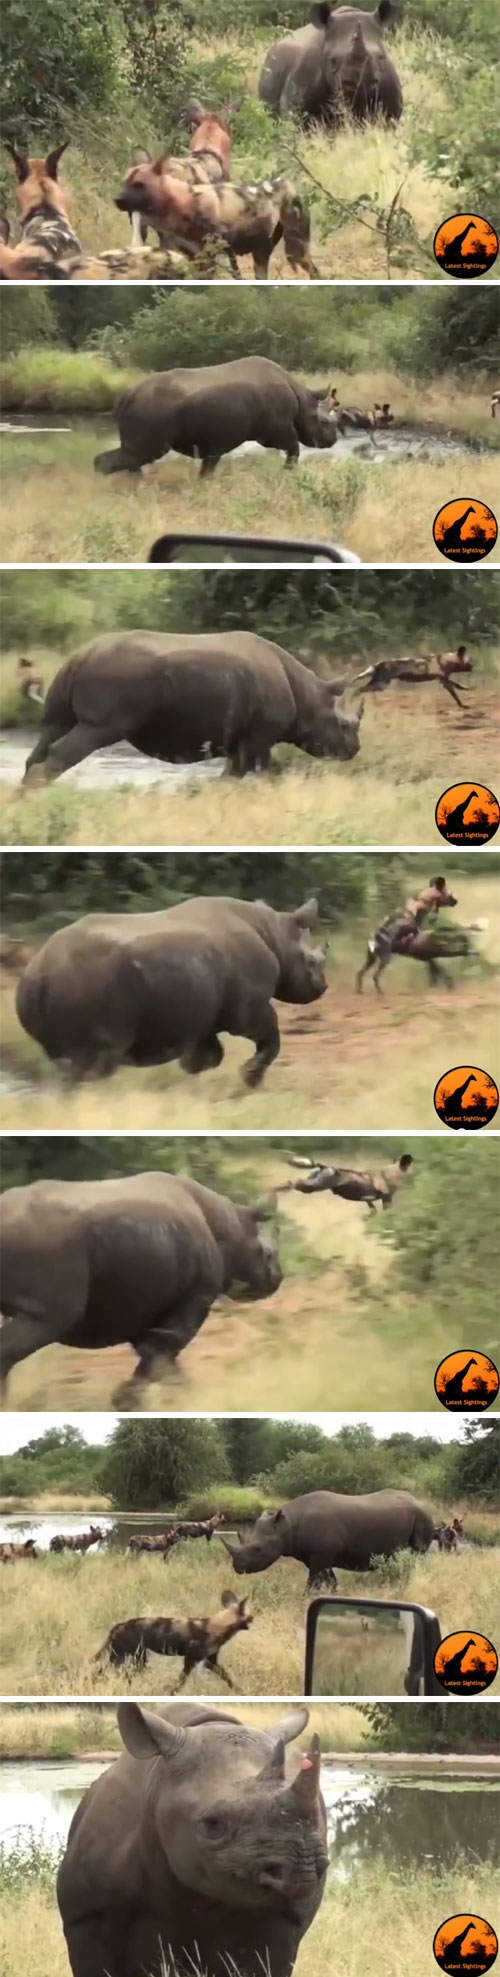 코뿔소 피해 필사적으로 도망가는 들개